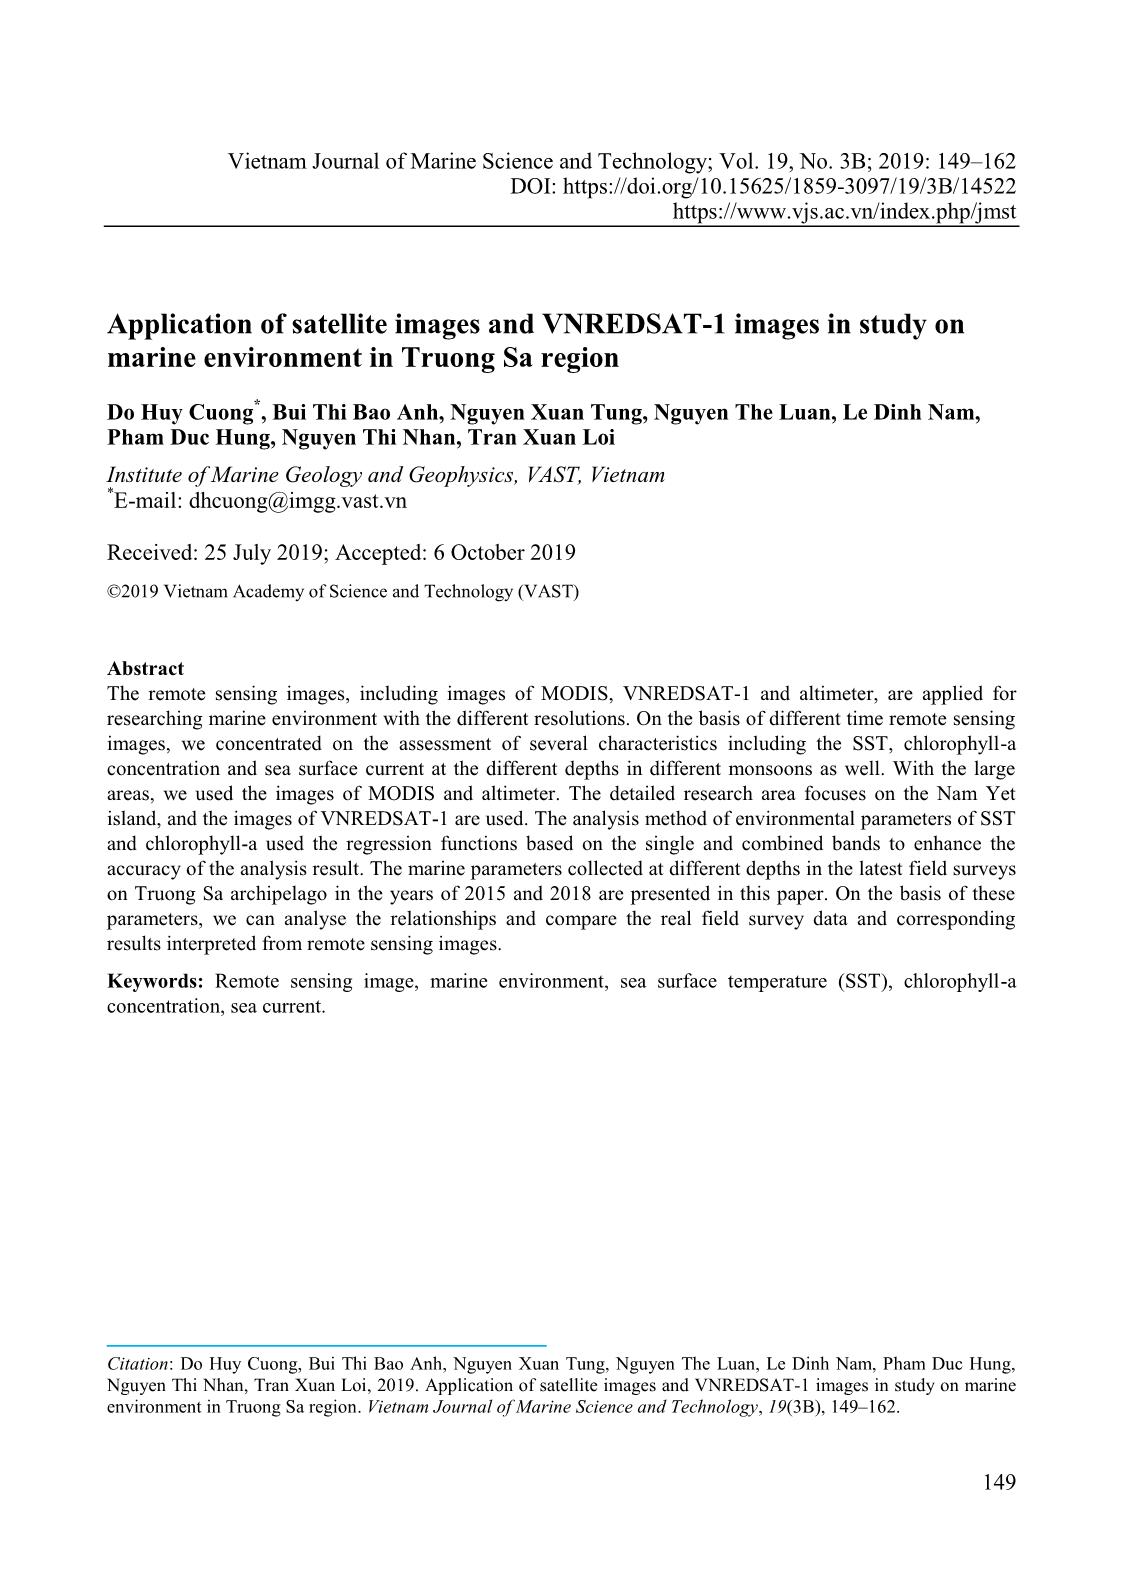 Ứng dụng tư liệu ảnh vệ tinh và ảnh VNREDSAT-1 trong nghiên cứu môi trường biển khu vực Trường Sa trang 1